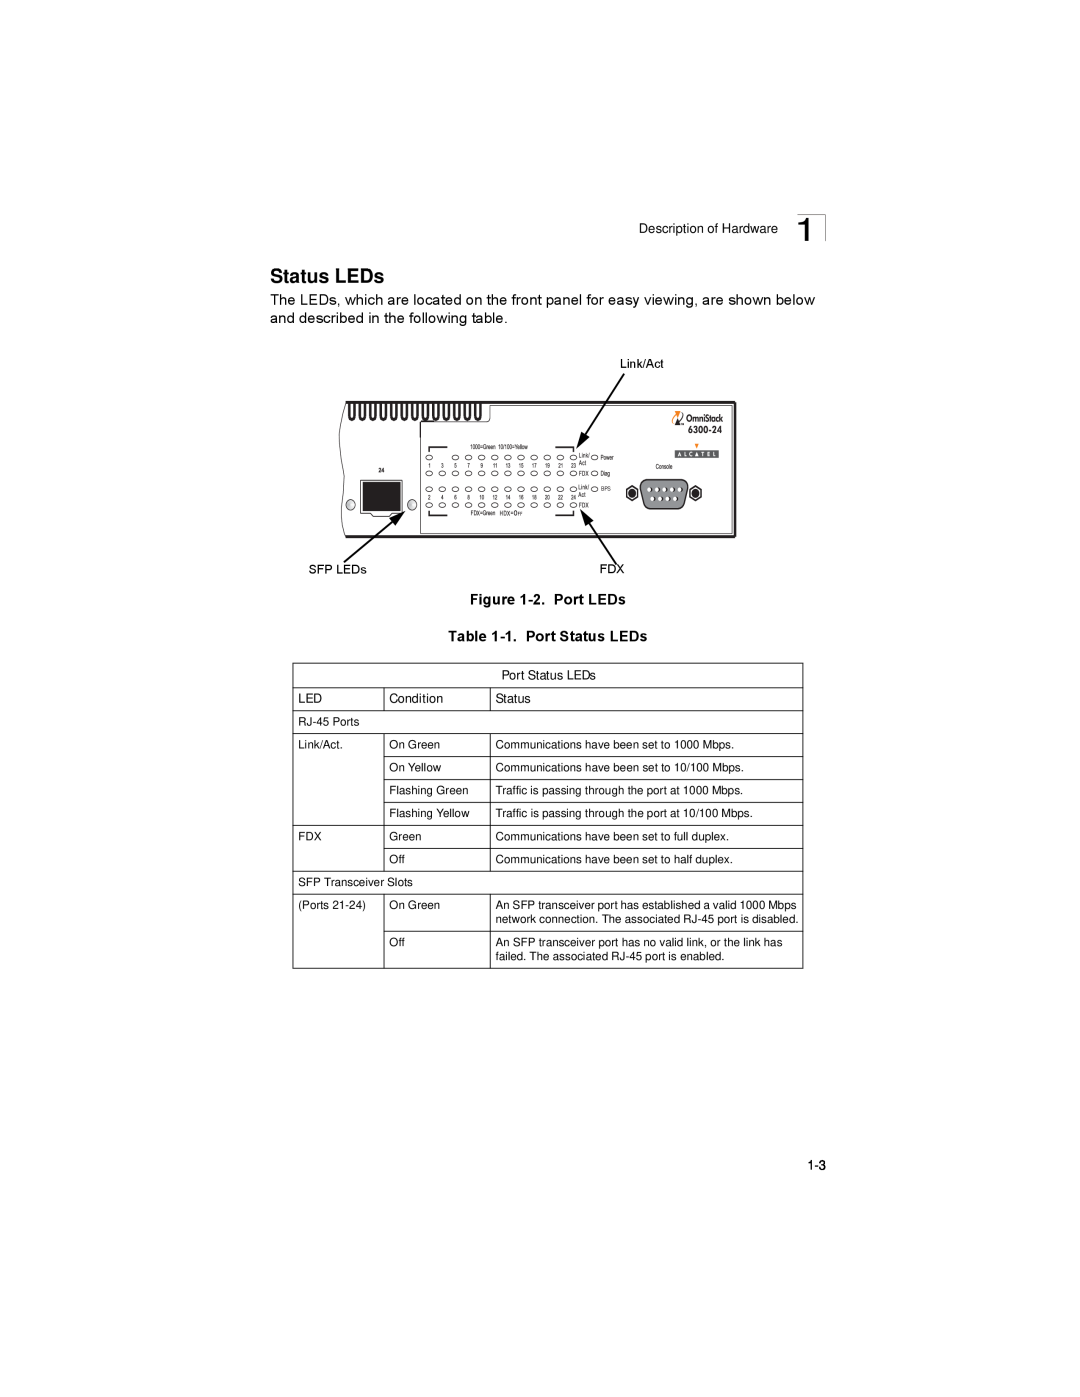 Alcatel-Lucent 6300-24 manual 2. Port LEDs, 1. Port Status LEDs, Condition 